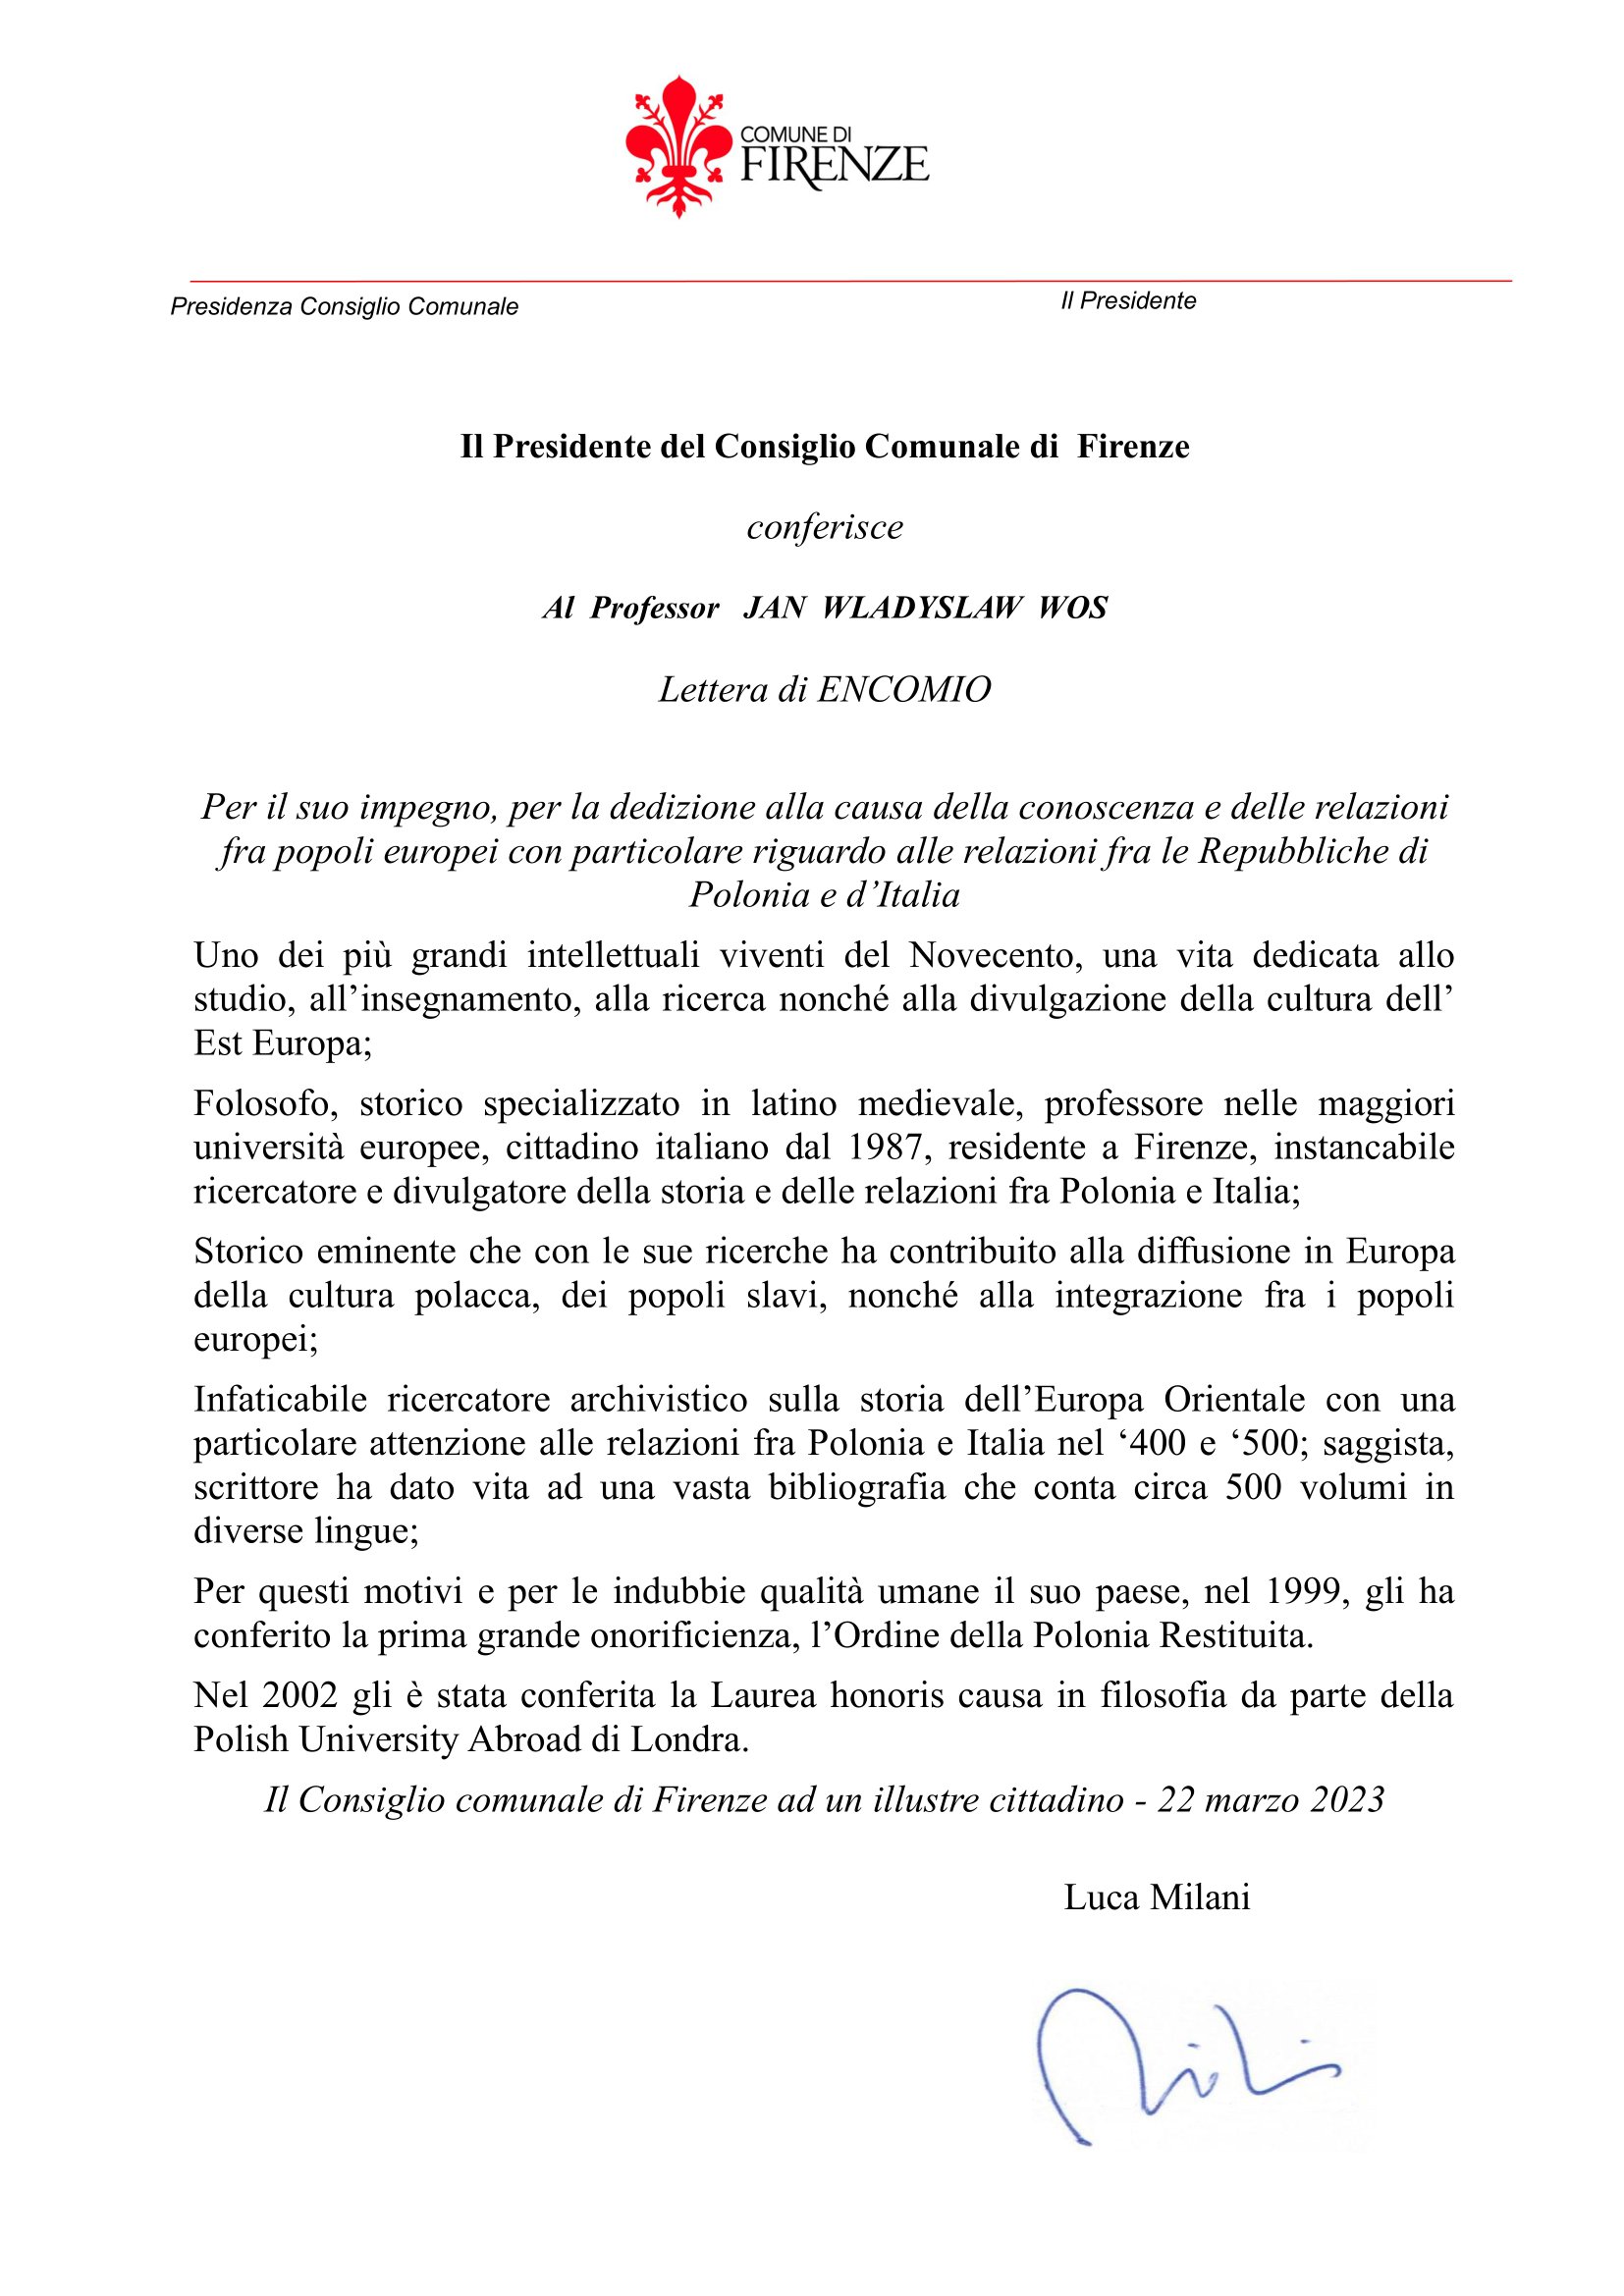 Il Presidente del Consiglio Comunale di Firenze conferisce la lettera di ENCOMIO al Professor Jan Władysław Woś